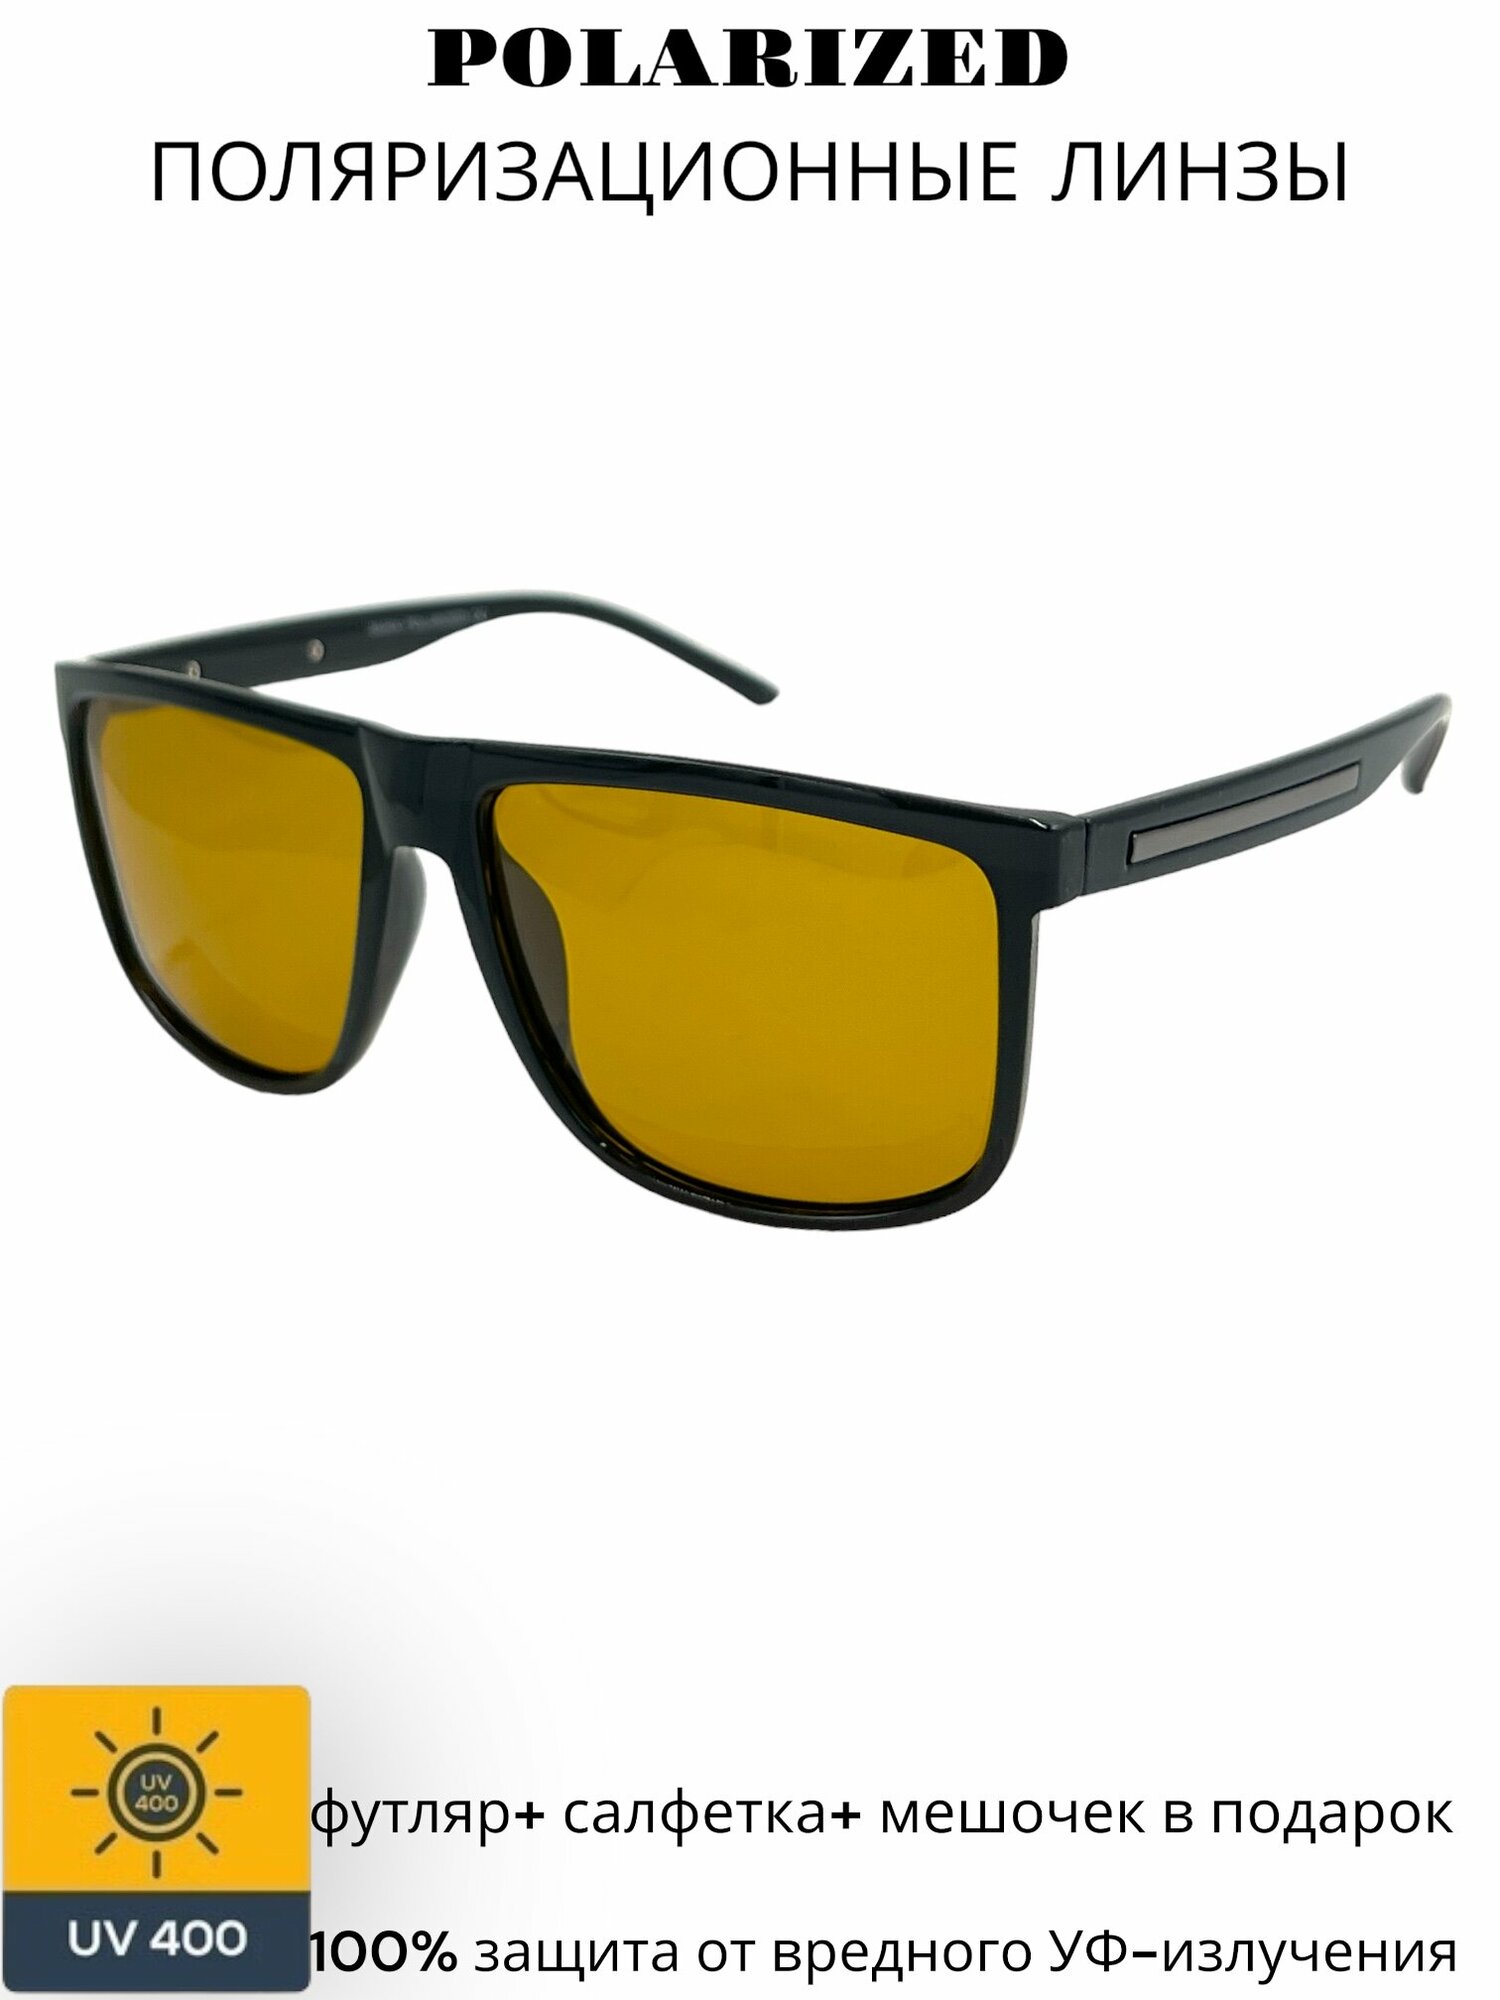 Солнцезащитные очки MARX